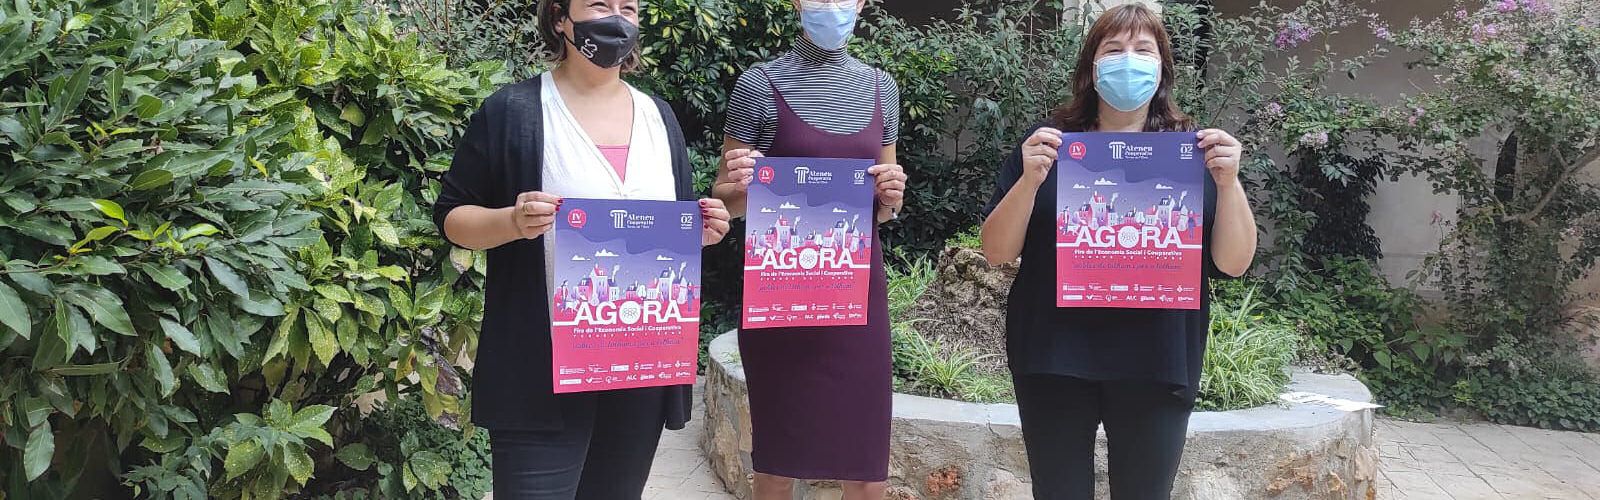 L’Ecofeminisme centrarà a Ulldecona la quarta edició de la Fira de l’Economia Social i Cooperativa Àgora